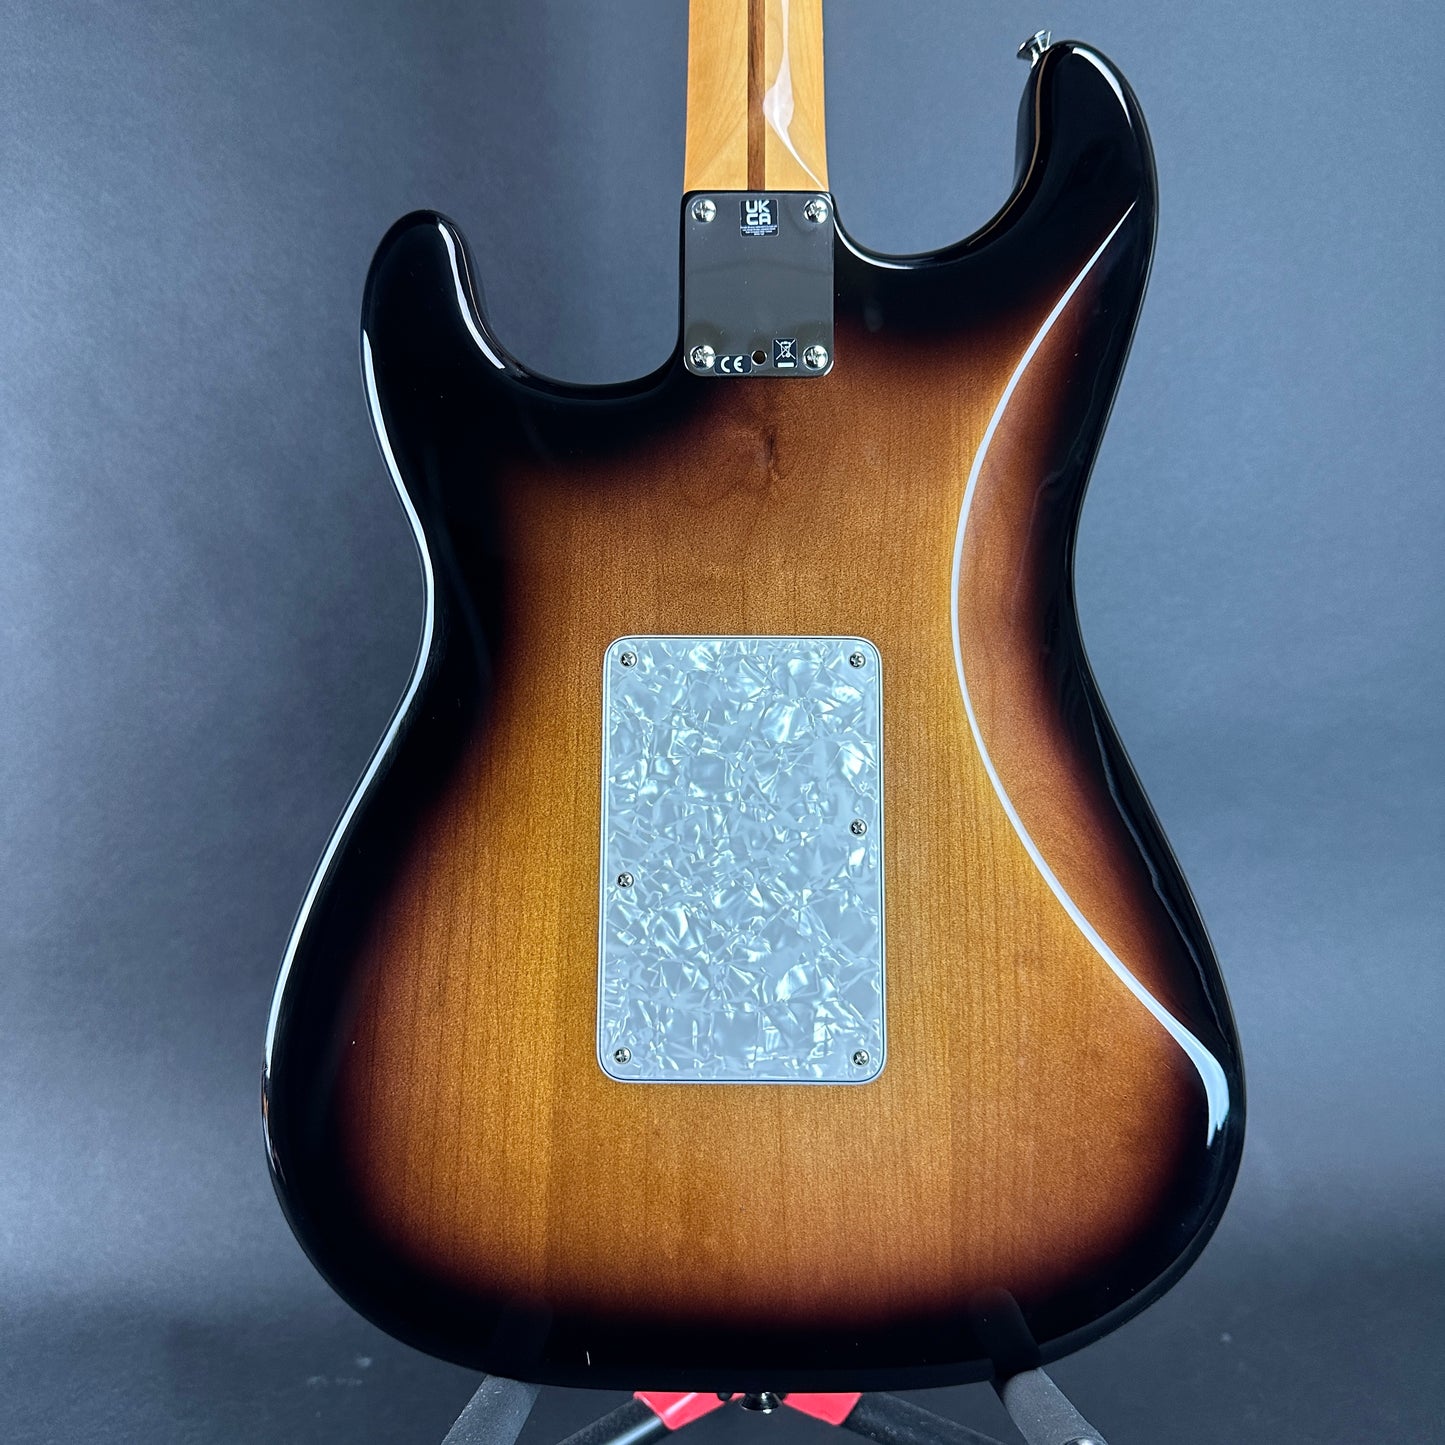 Back of body of Used Fender Dave Murray Strat Sunburst.